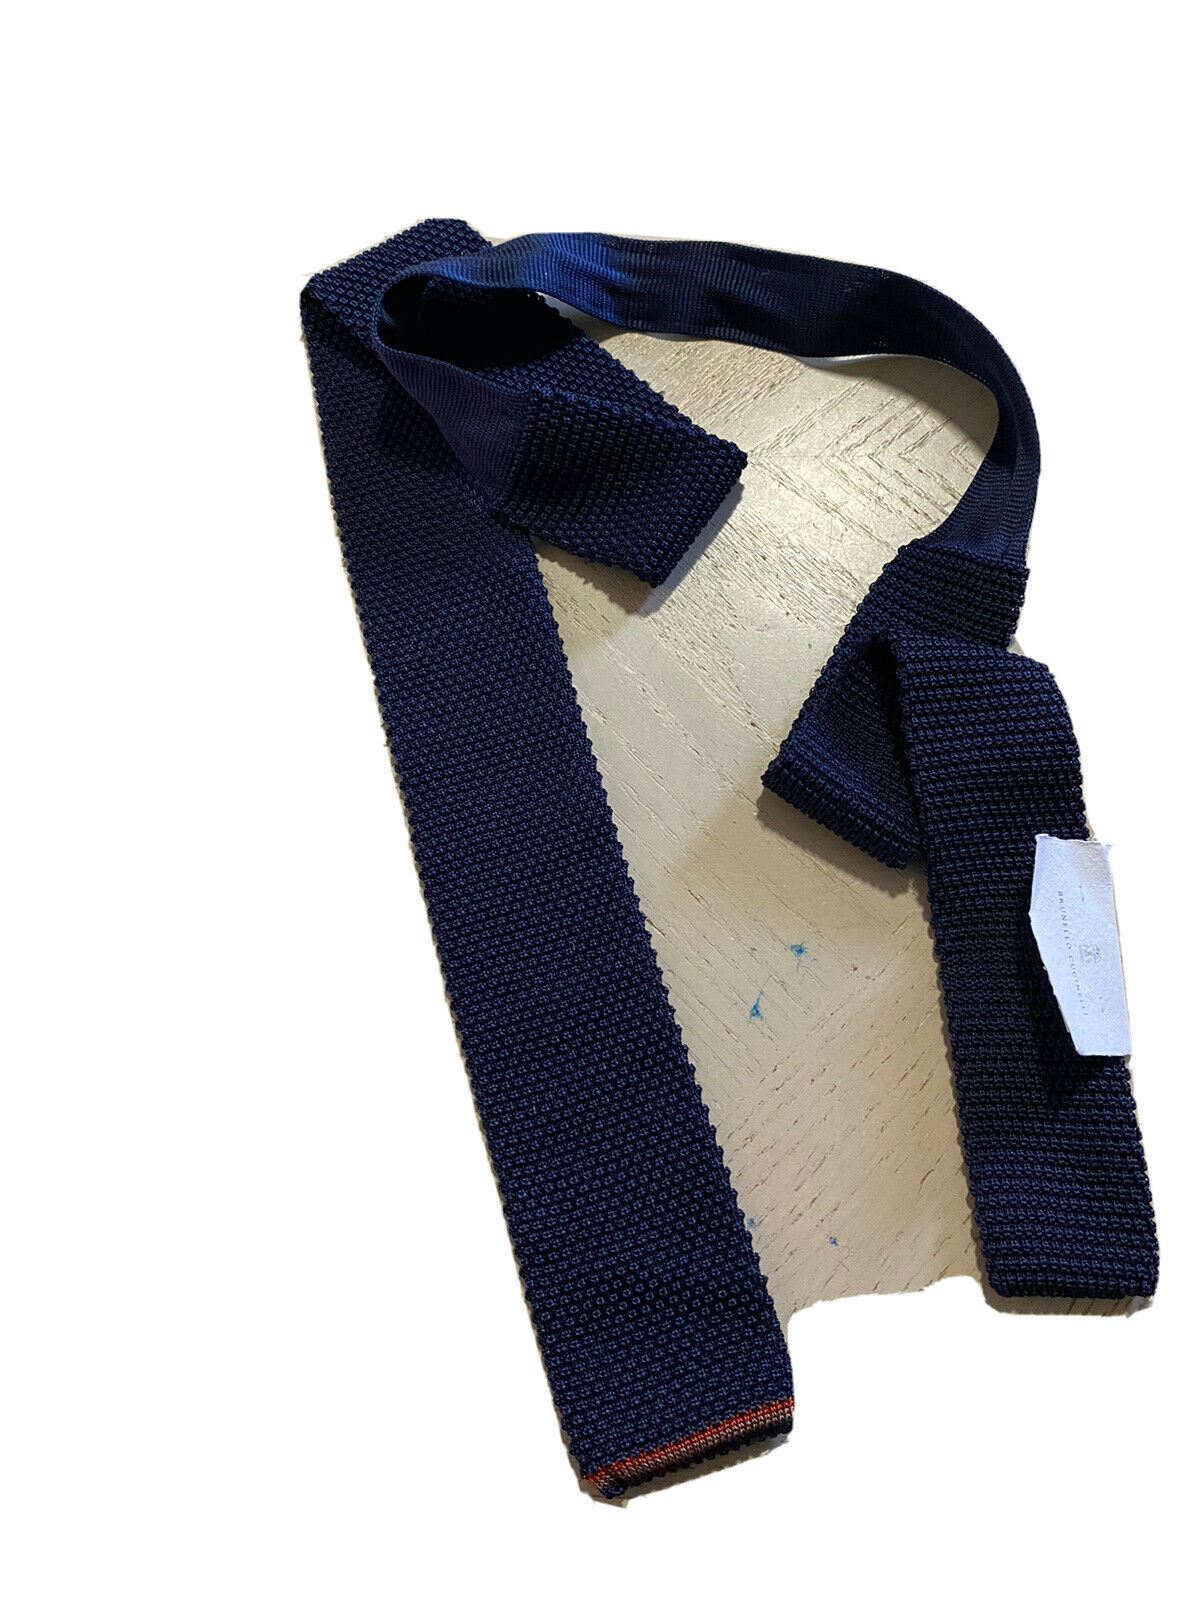 Новый текстурированный шелковый галстук Brunello Cucinelli за 280 долларов, темно-синий, Италия